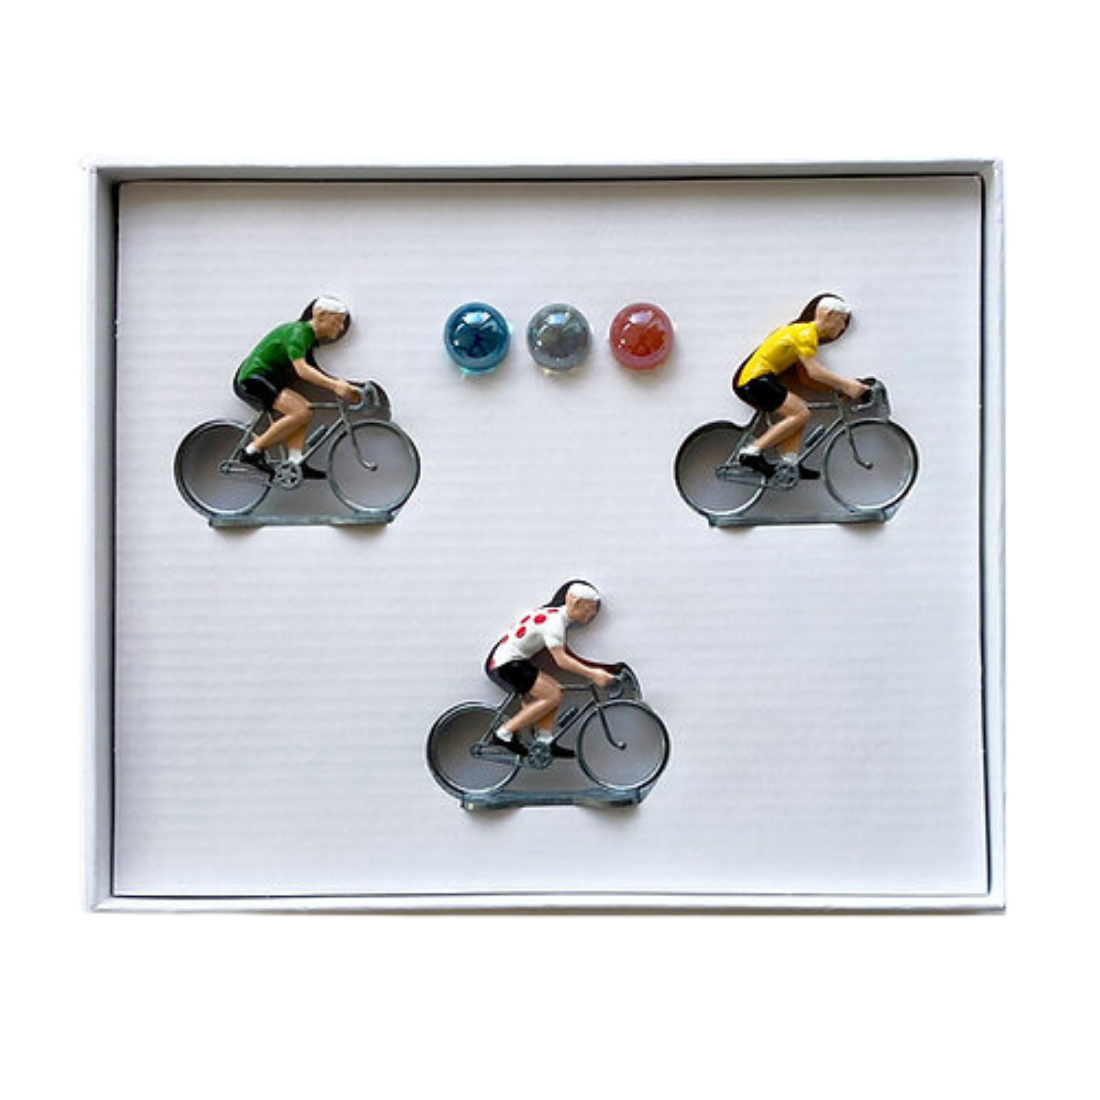 Billede af Bernard & Eddy Little Cyclist World Tour Spil 3 cykelryttere + 3 glaskugler